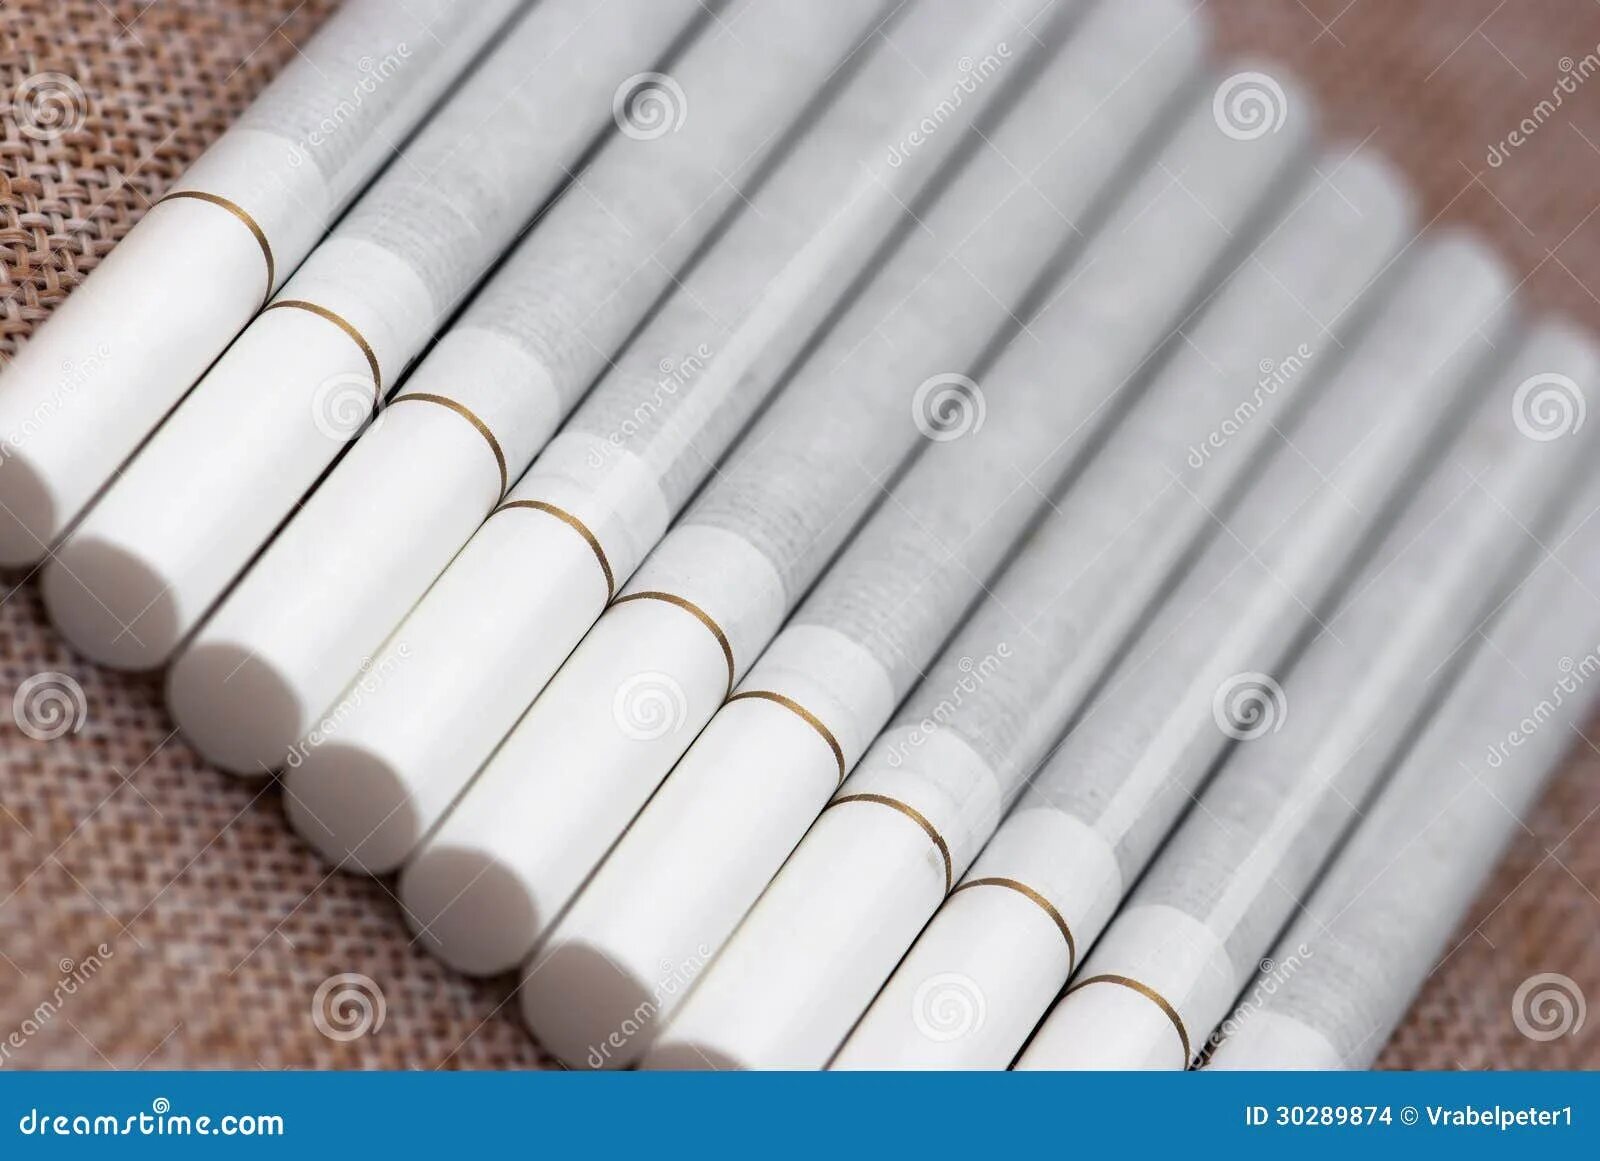 Сигареты с золотой полоской на фильтре. Сигареты с золотой полоской. Белые сигареты с белым фильтром. Сигареты с белым фильтром